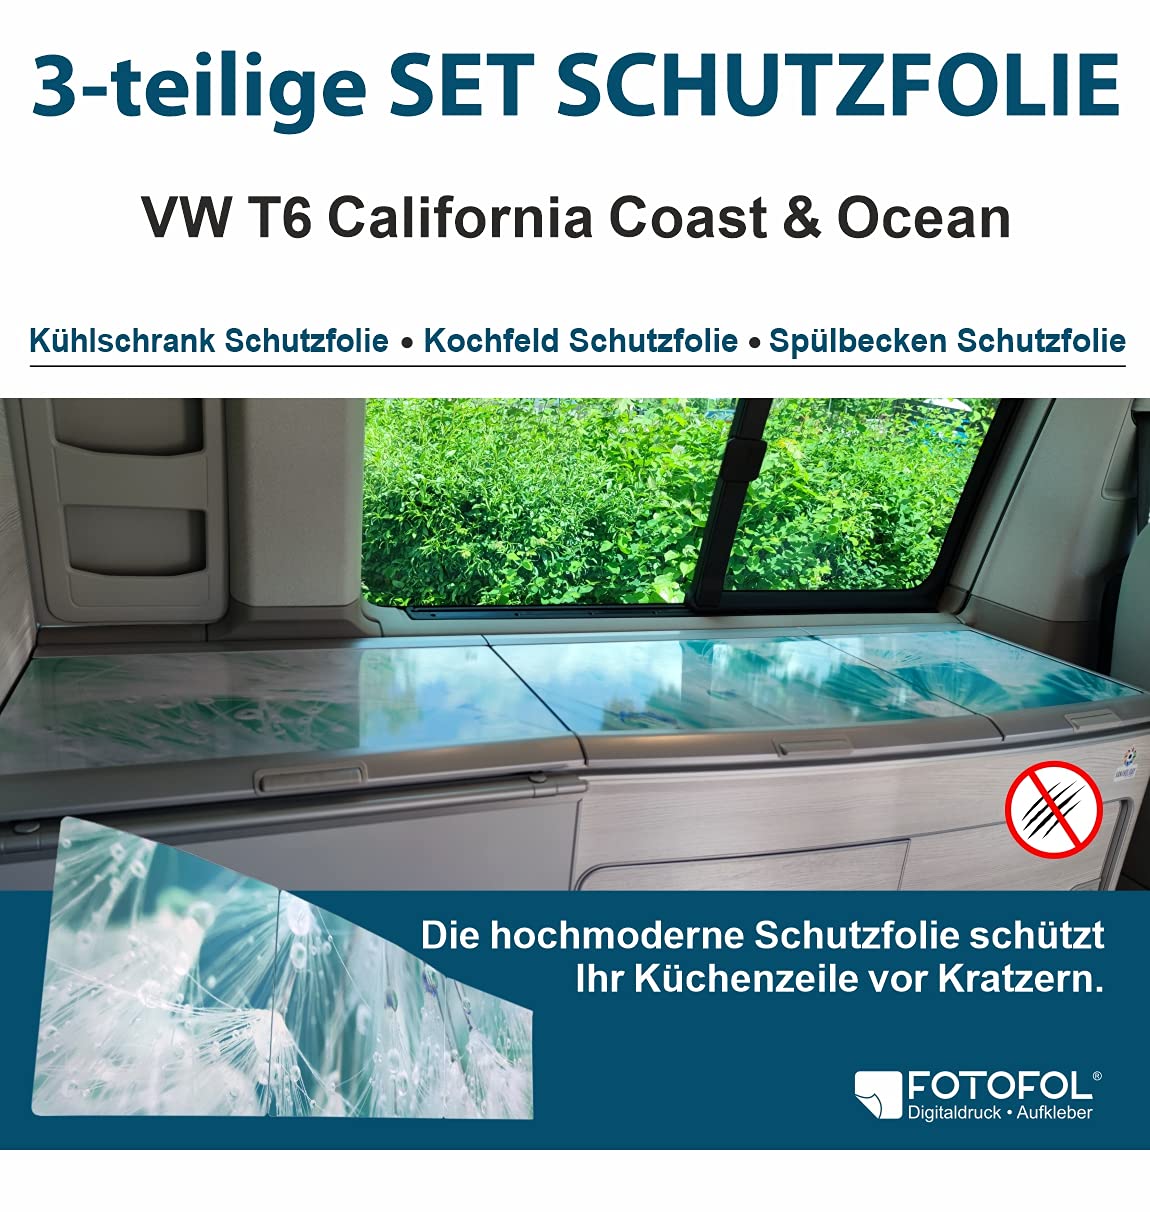 FOTOFOL Schutzfolien-Set, passt für VW T6 California. Schutz für Kühlschrank Kochfeld Spülbecken mit Motiv Pusteblumen. Schutz für Dein Camper von FOTOFOL